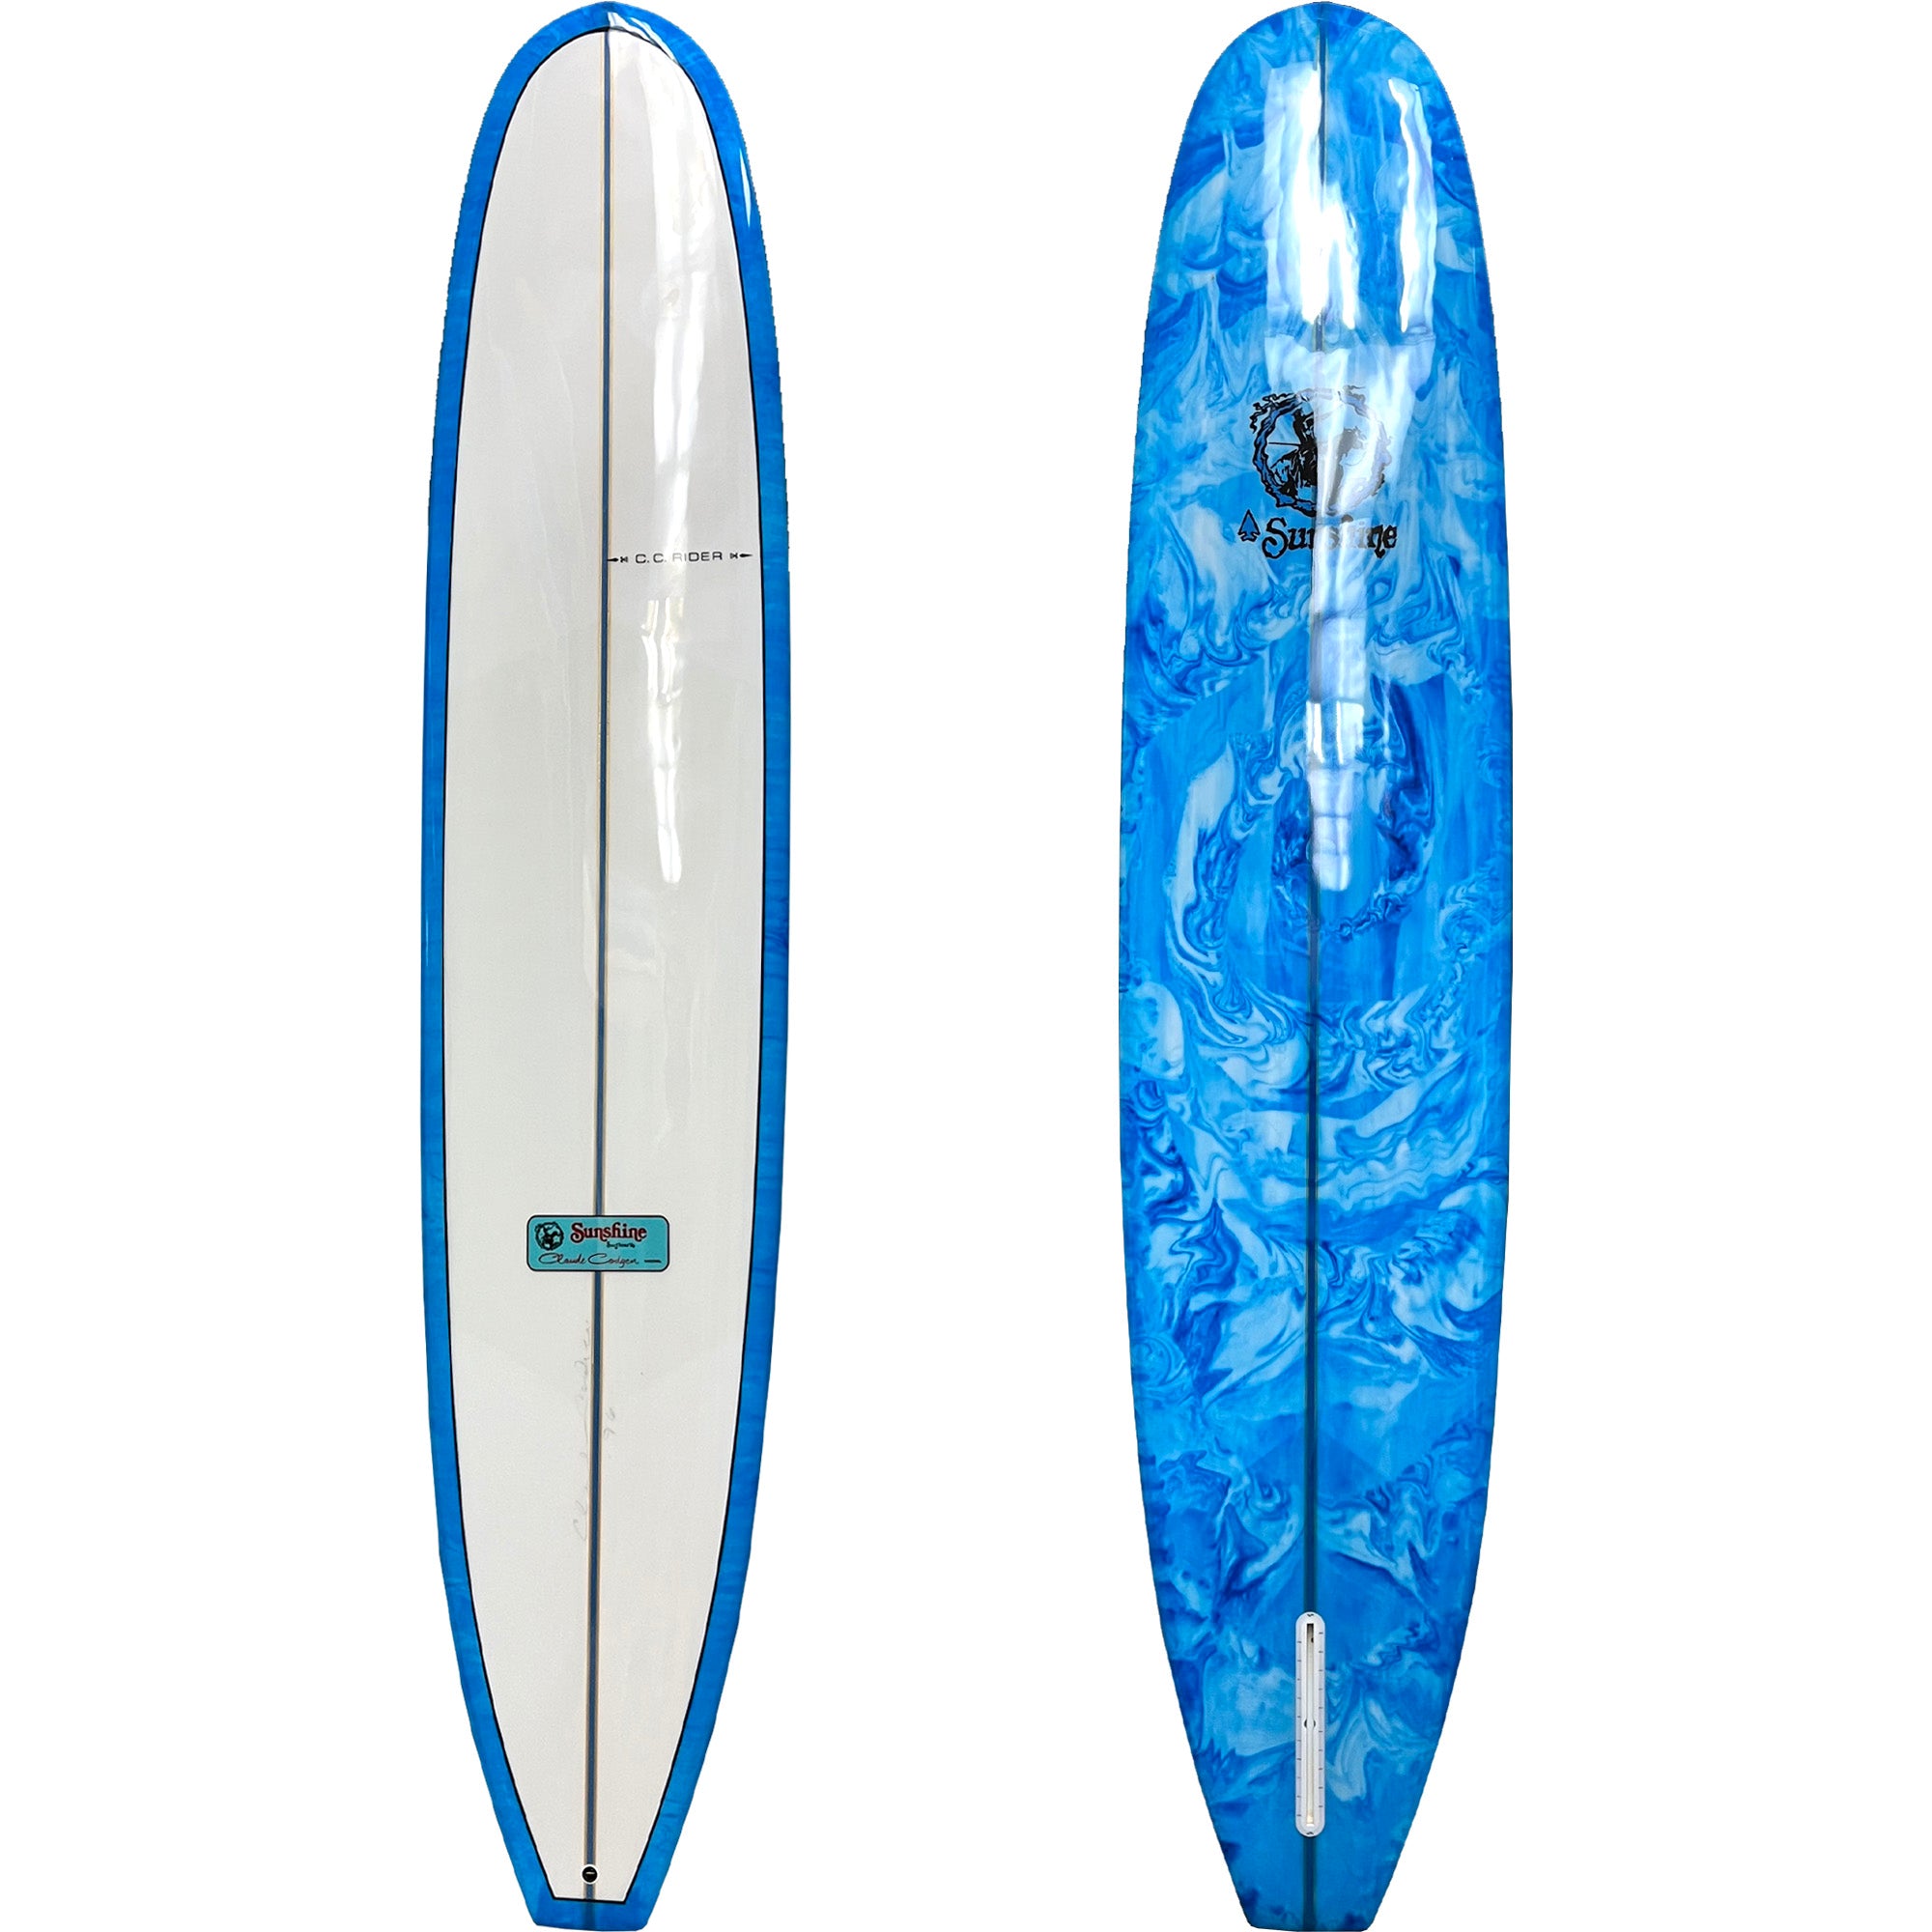 Sunshine CC Rider Longboard Surfboard